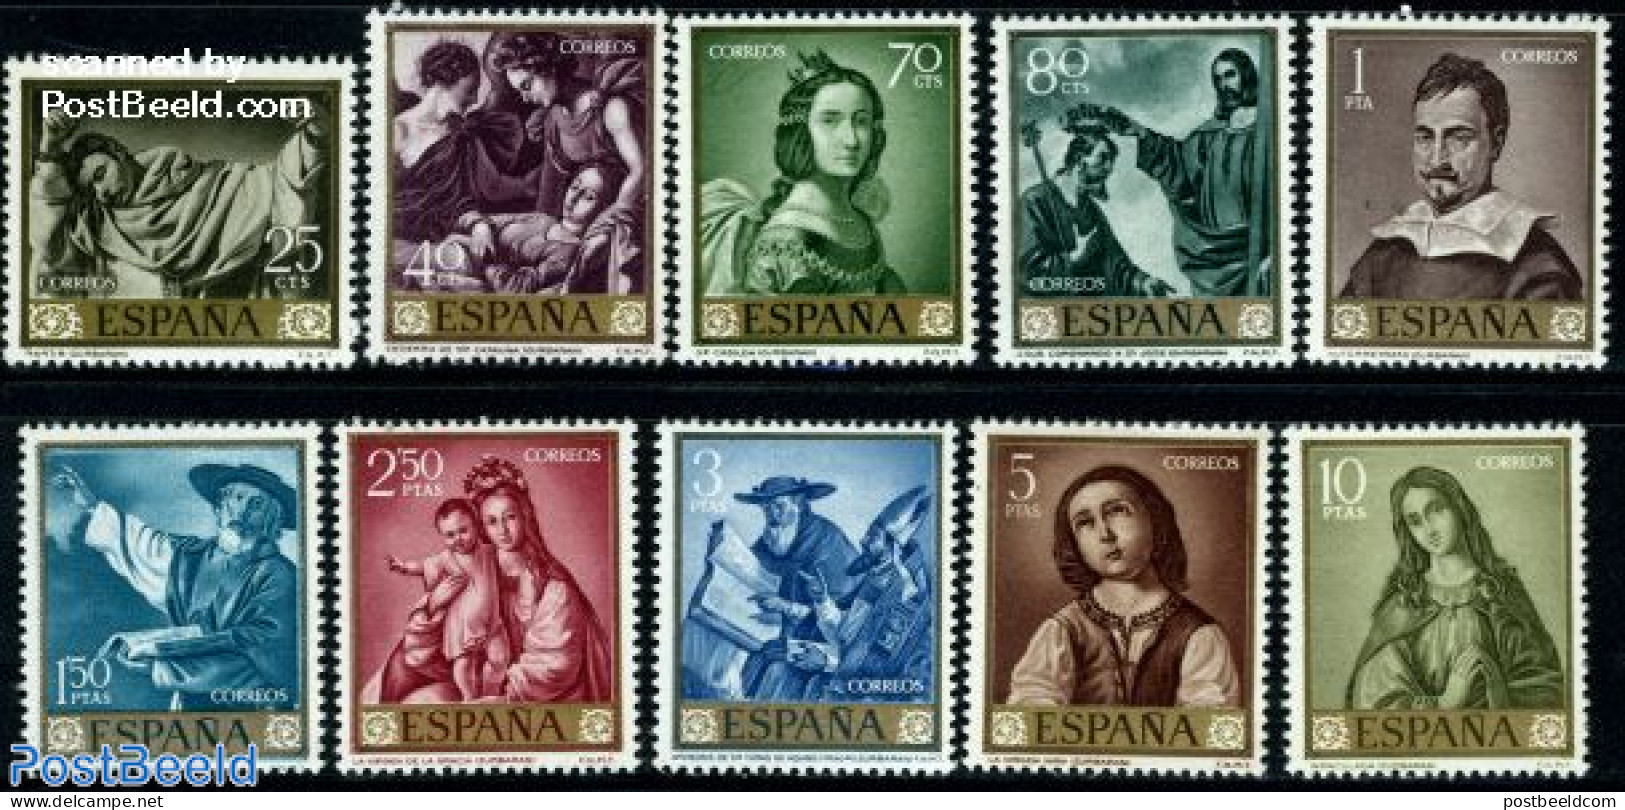 Spain 1962 De Zurbaran Paintings 10v, Unused (hinged), Stamp Day - Art - Paintings - Unused Stamps